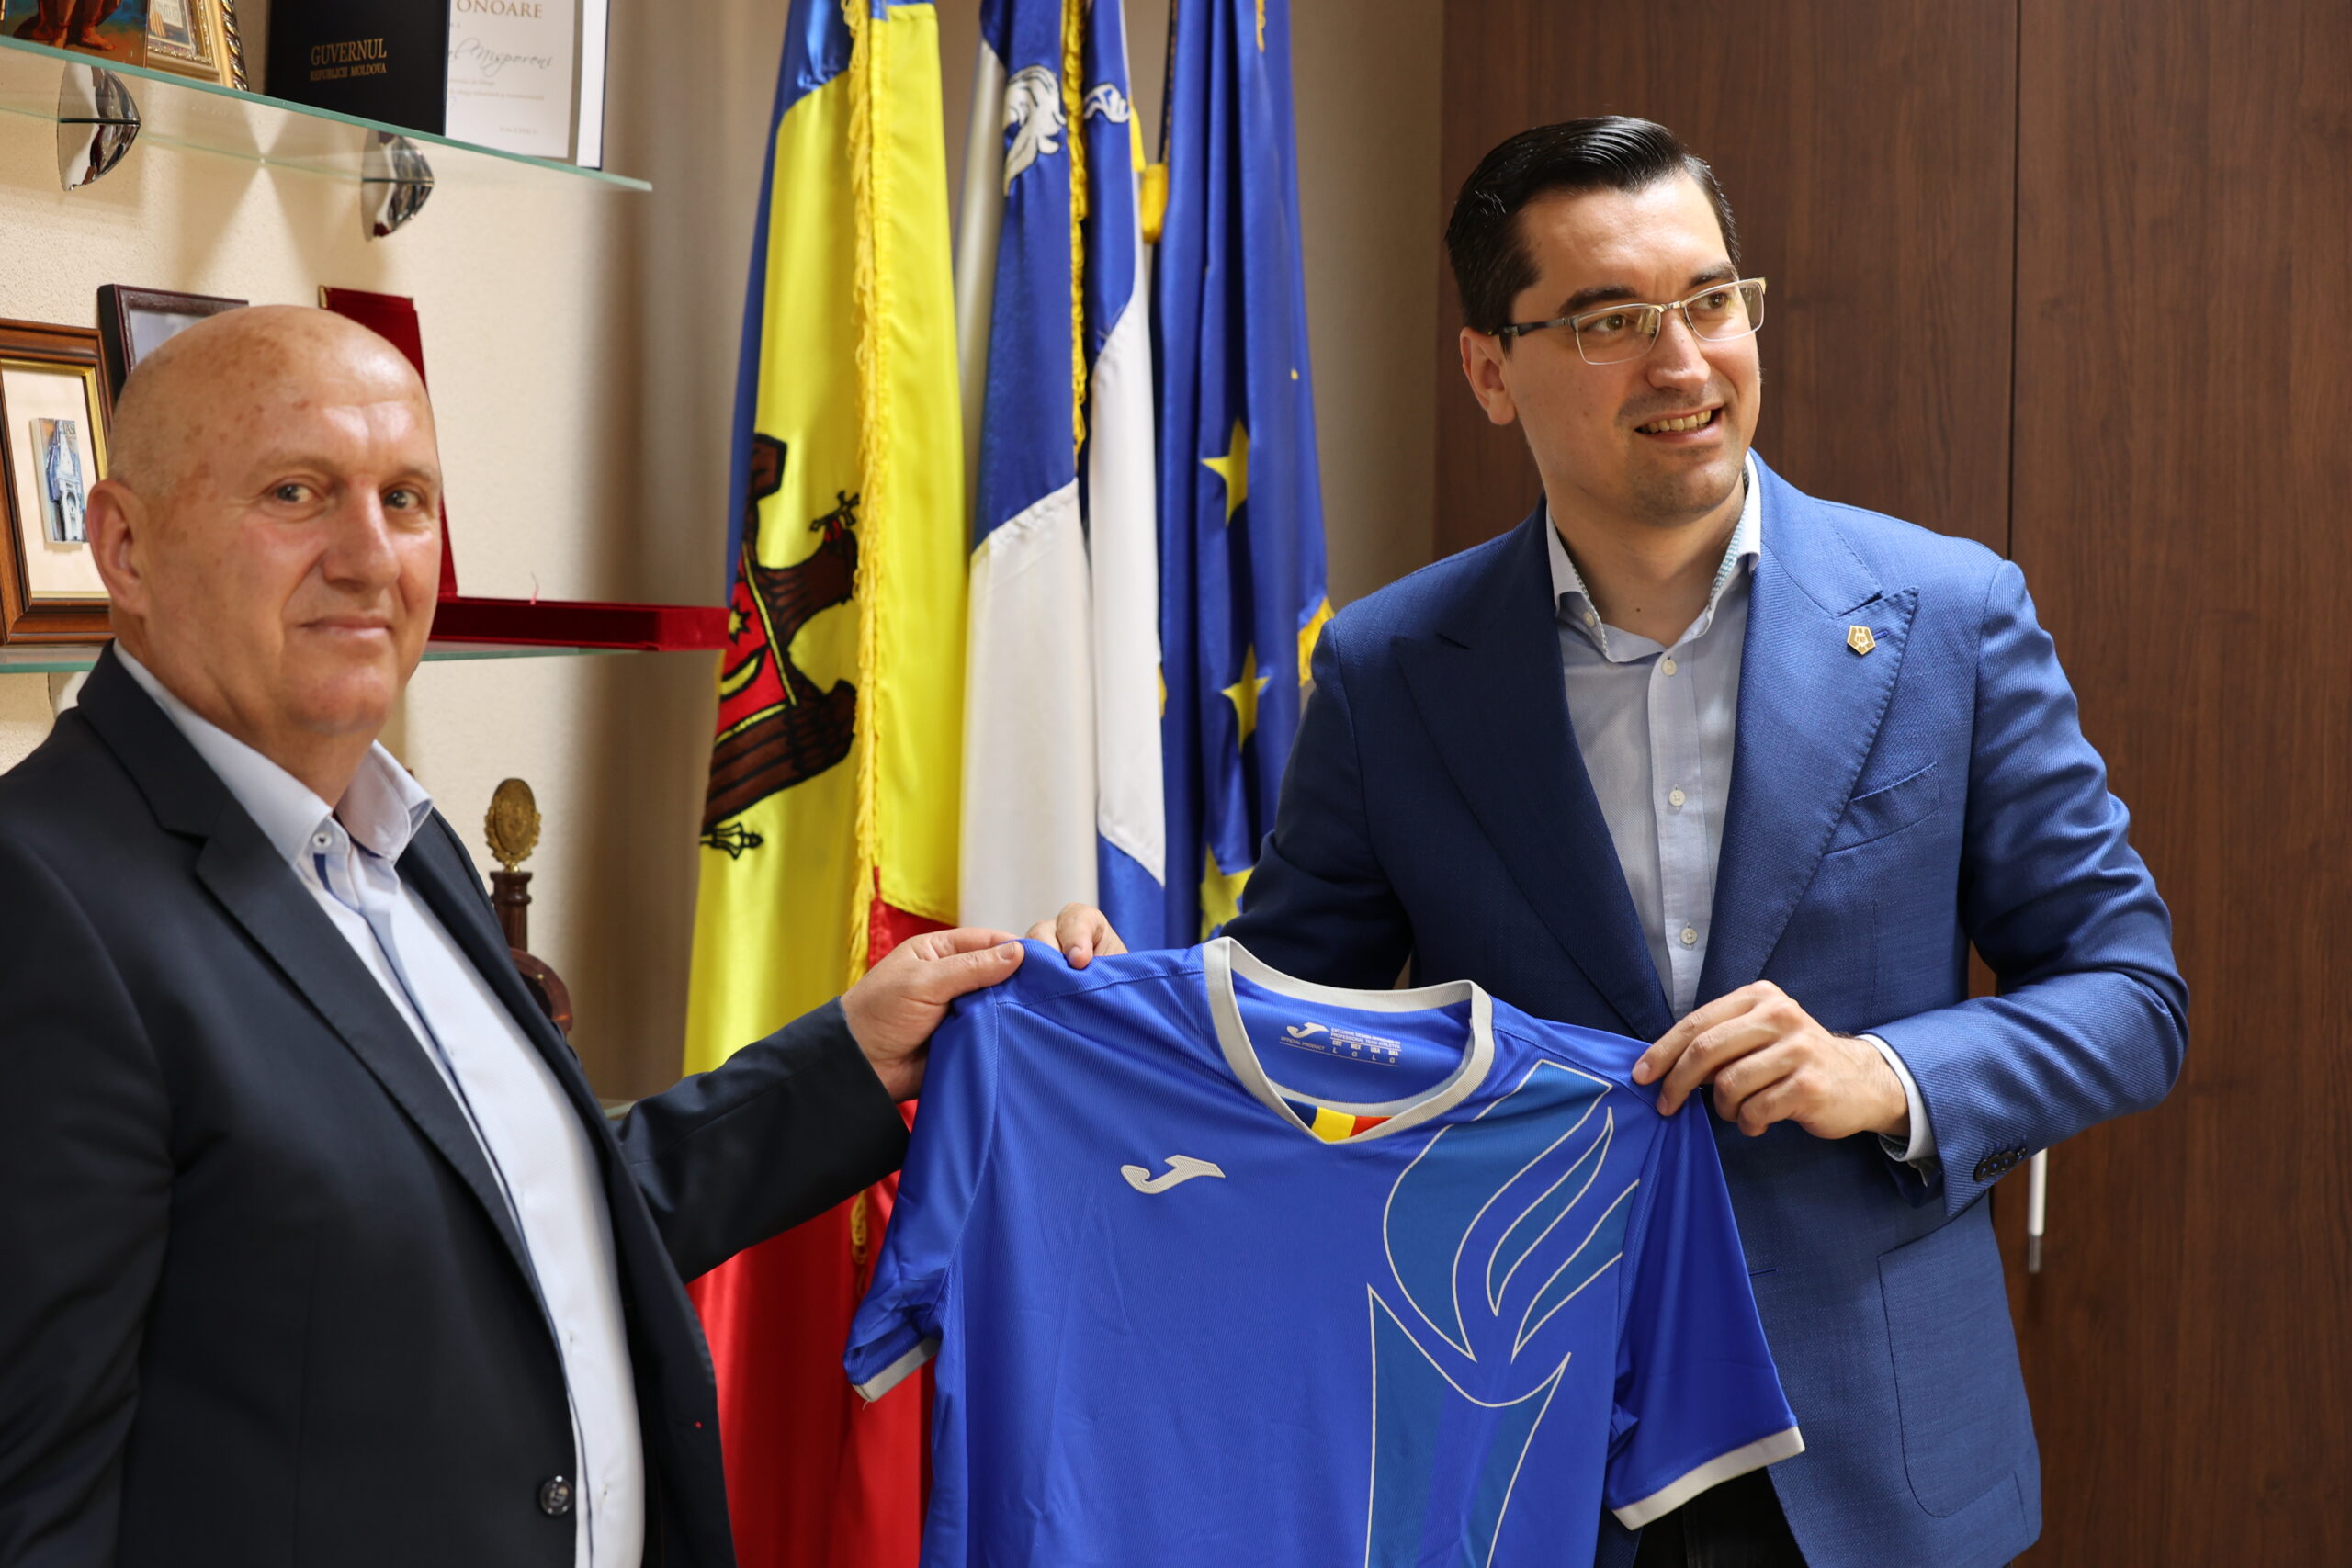 Președintele raionului dnul Vasile MĂRCUȚĂ a avut o întrevedere cu Președintele Federației Române de Fotbal, dnul Răzvan BURLEANU.